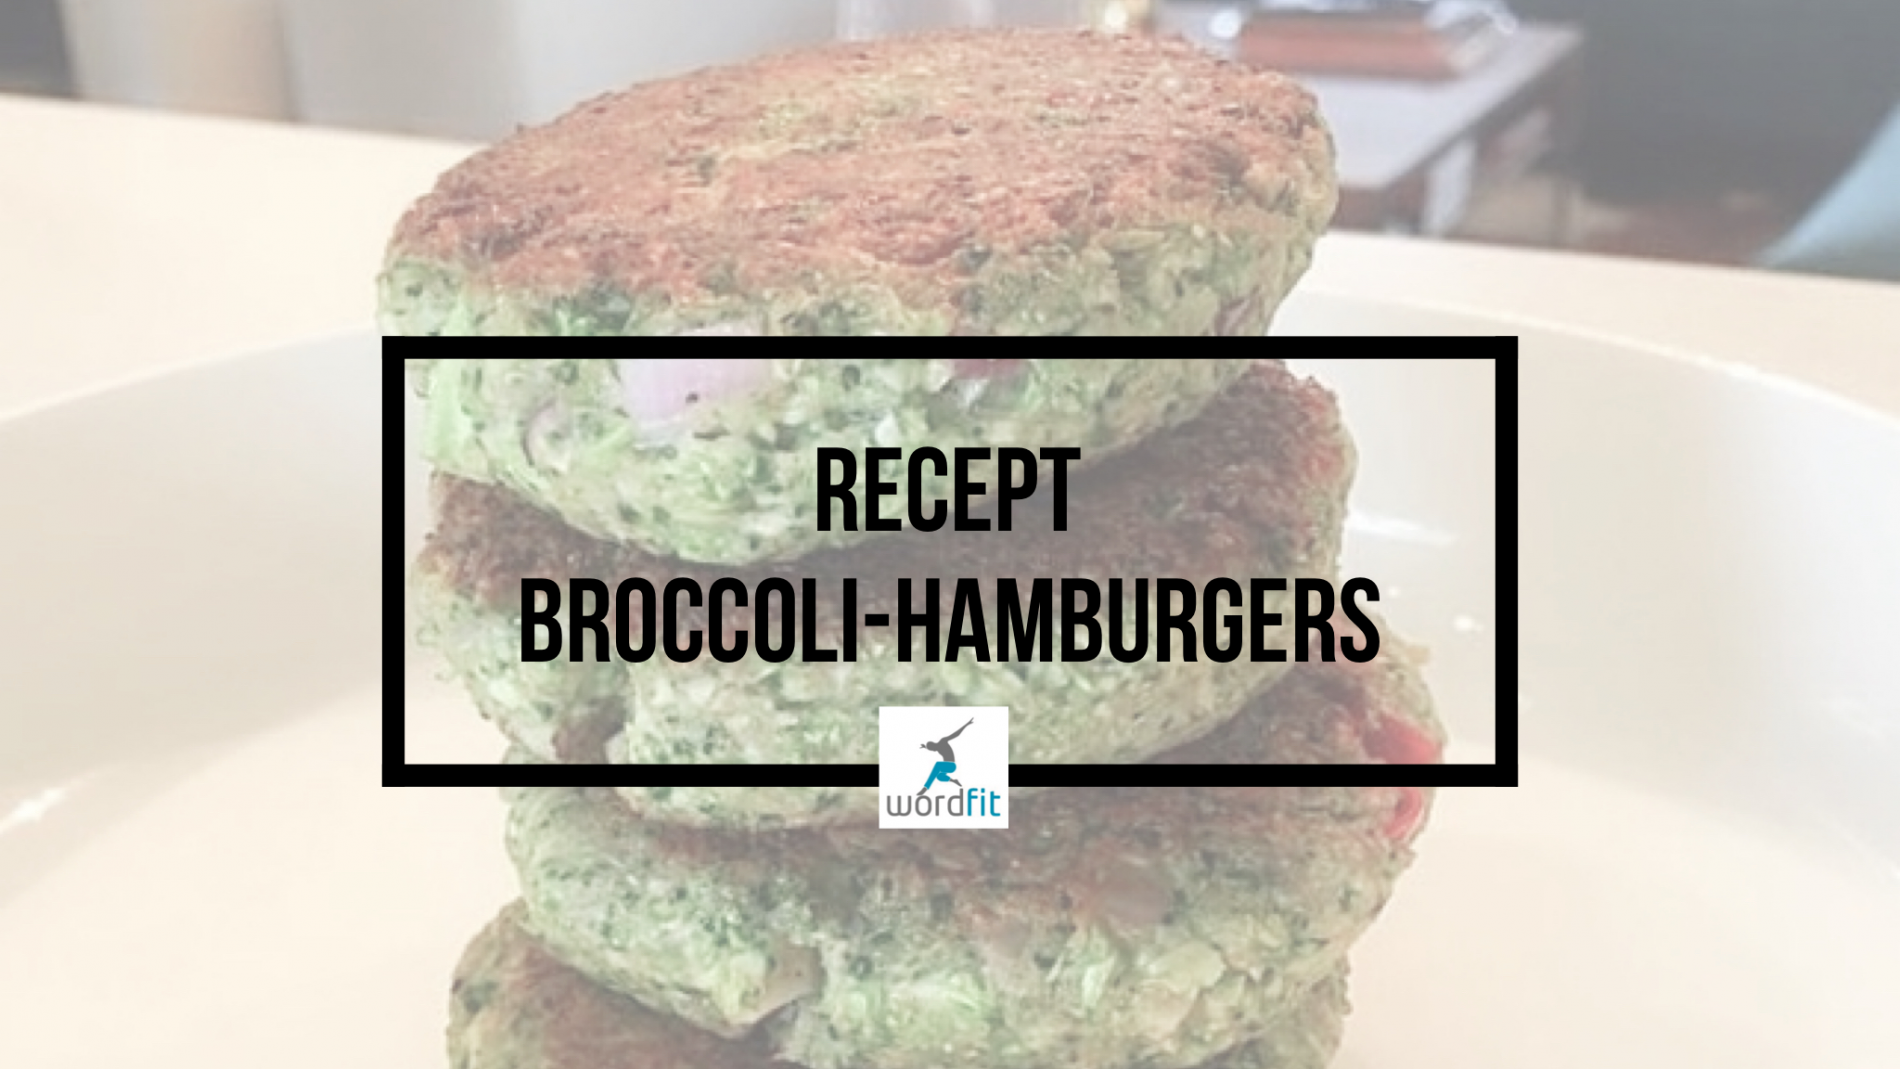 Recept Broccoli-hamburgers WordFit Online vitaliteitscoaching voor een leven vol goesting en energie